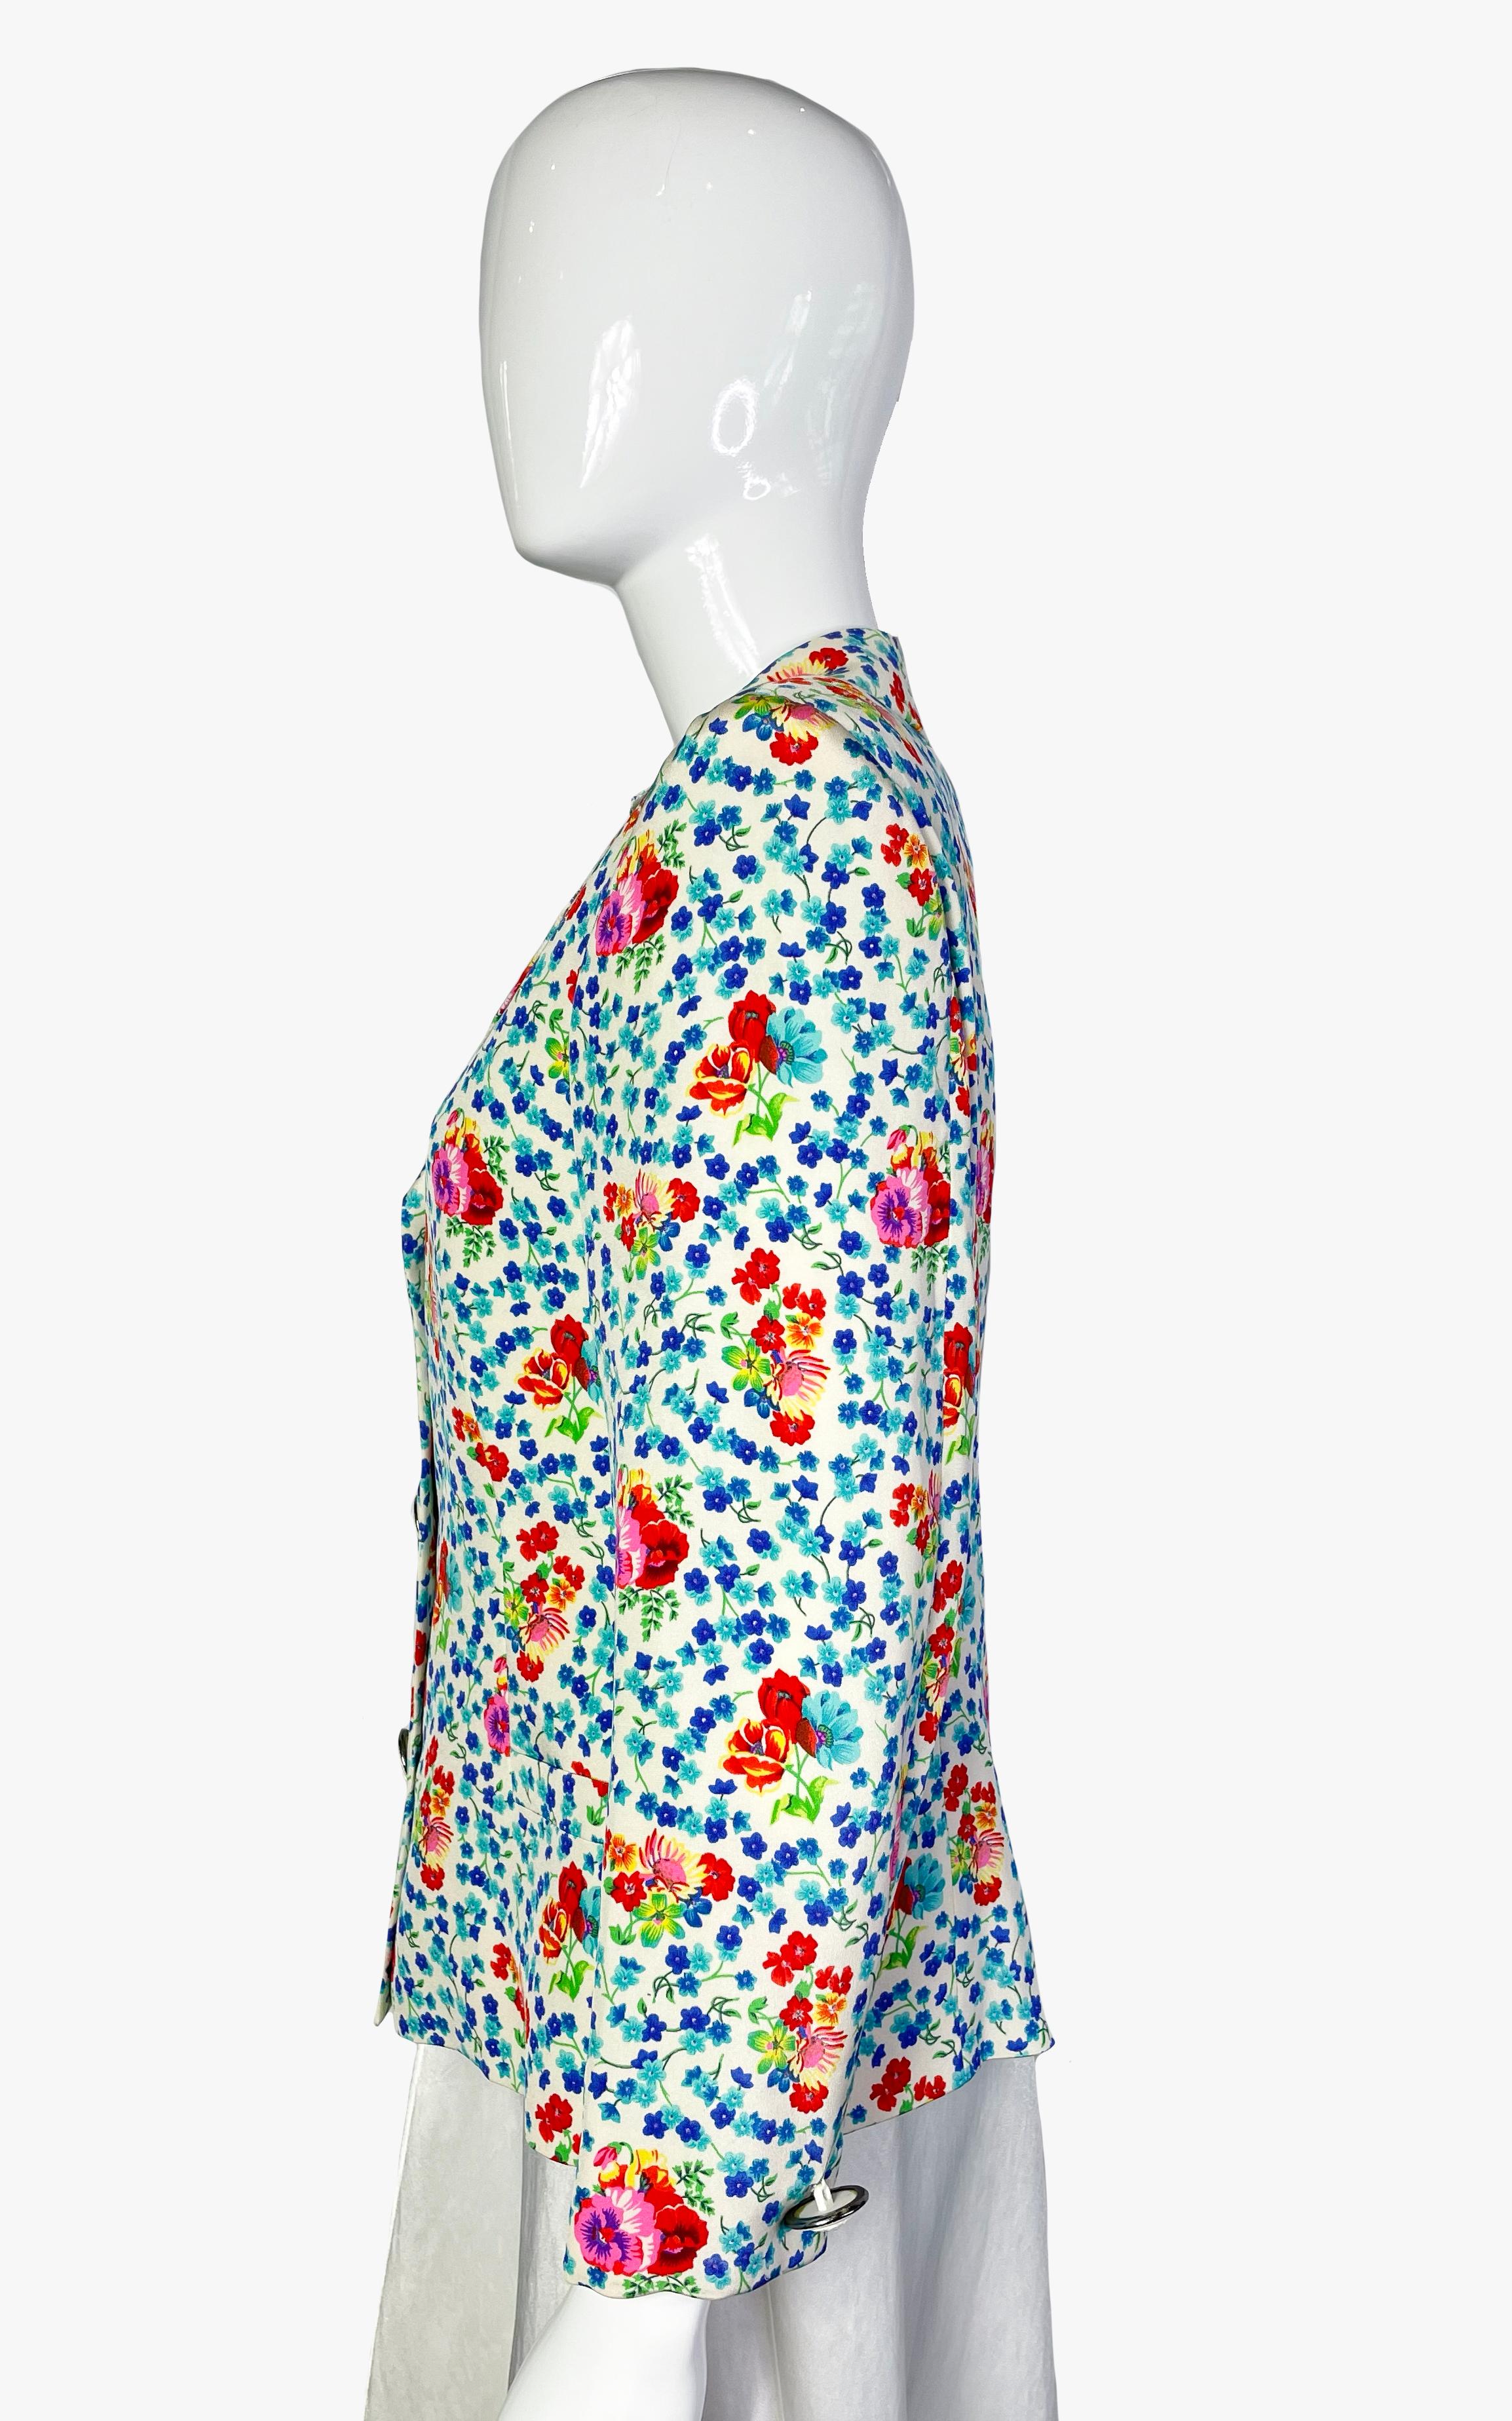 Gianni Versace couture floral print silk blazer with beautiful “Medusa” buttons

Period: 1990s

Size – IT42, US8 / M

Measurements:

Length – 56 cm / 22”
Sleeve – 55,5 cm / 21,8”
Shoulder – 42,5 cm / 16,7”
Pit to pit – 49 cm / 19,3”
Waist – 86 cm /